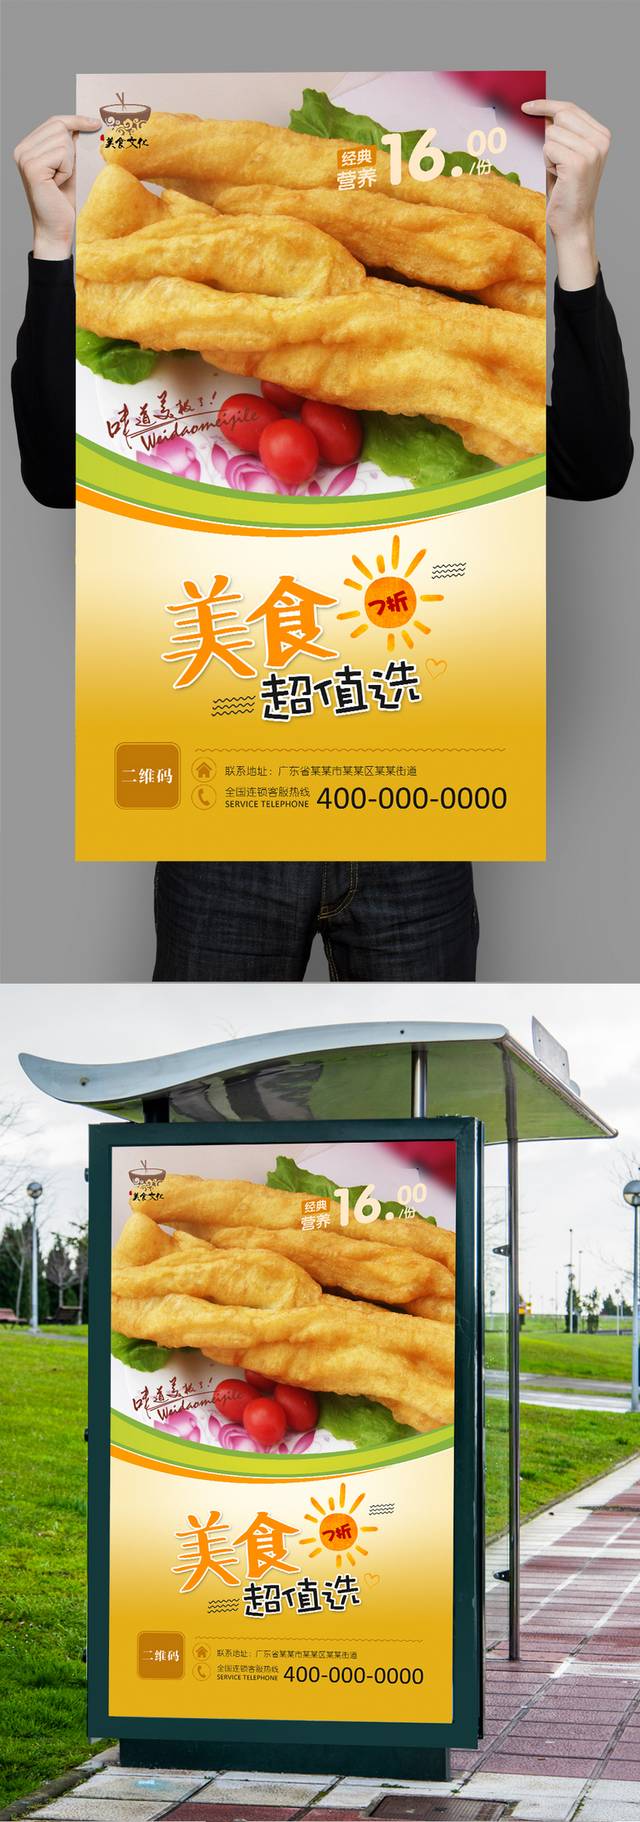 油条美食宣传海报设计